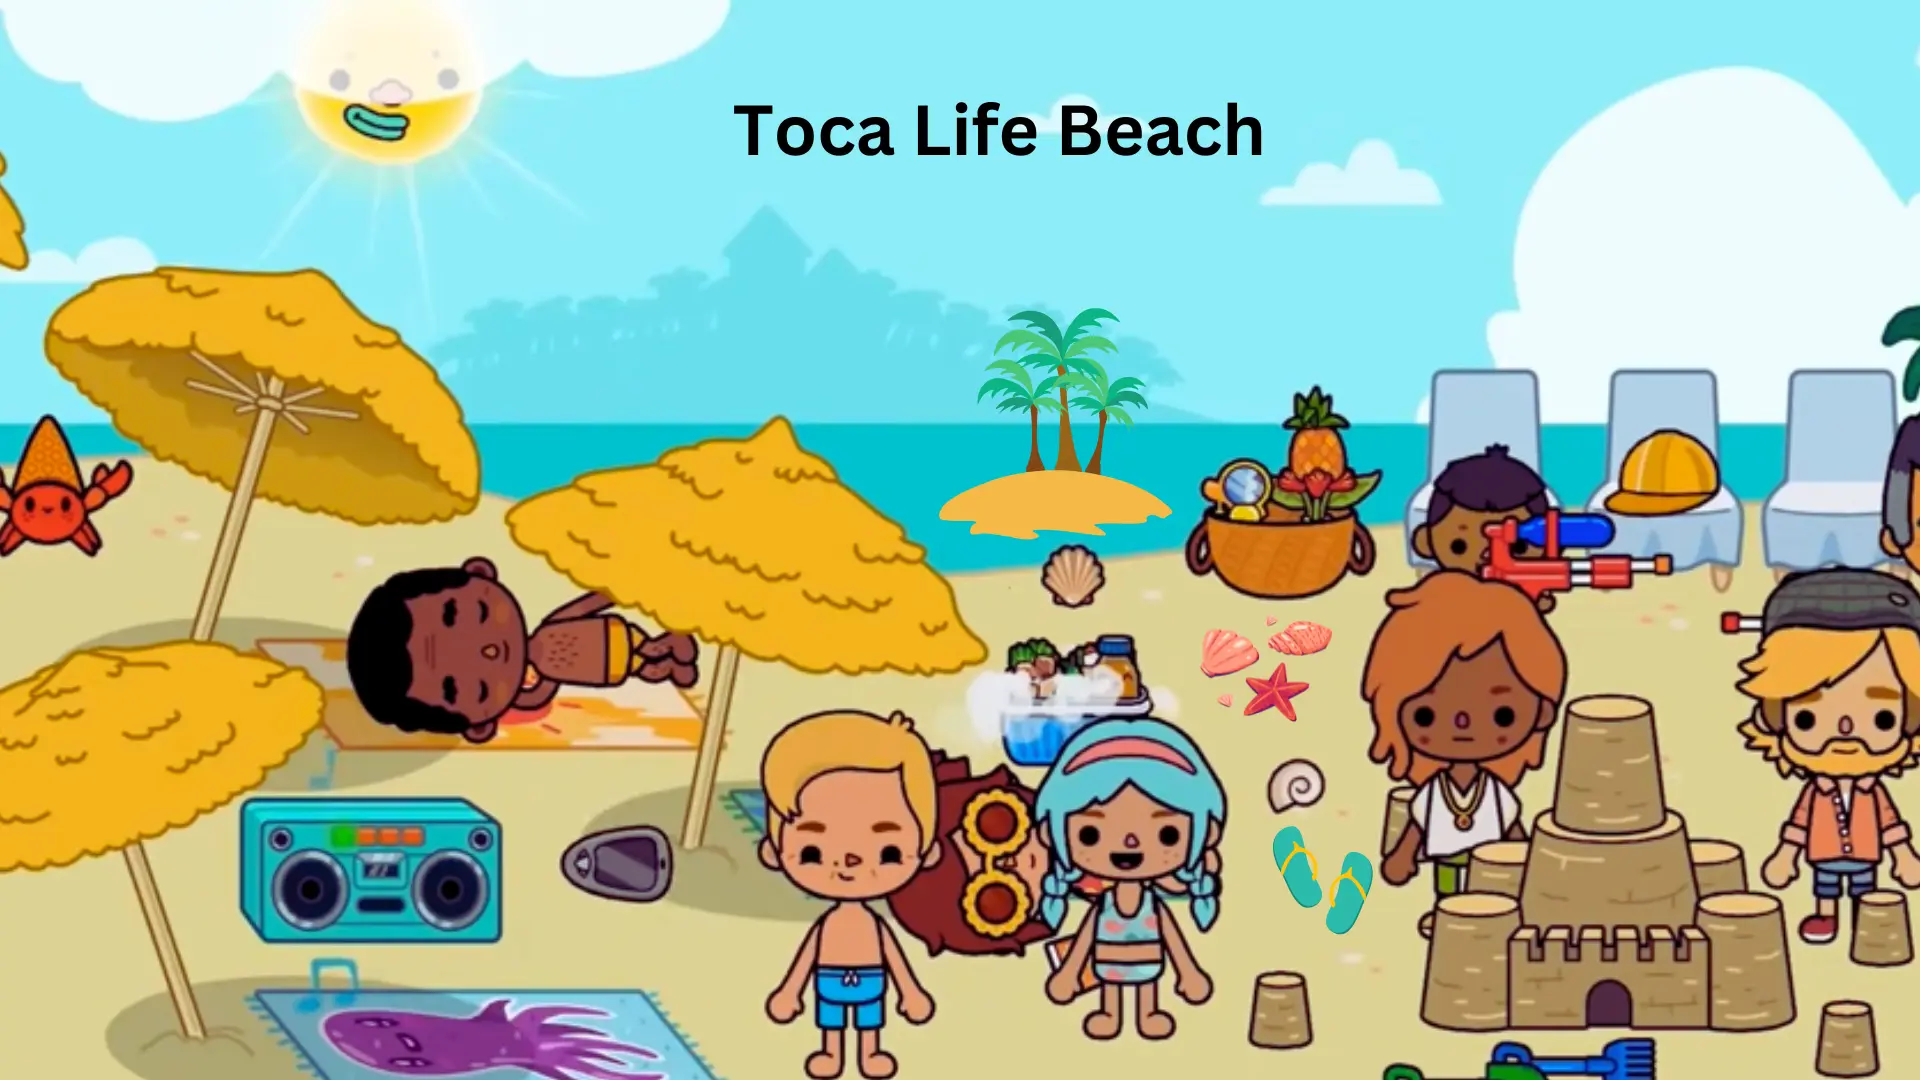 Enjoy fun at Toca Life Beach with activities.